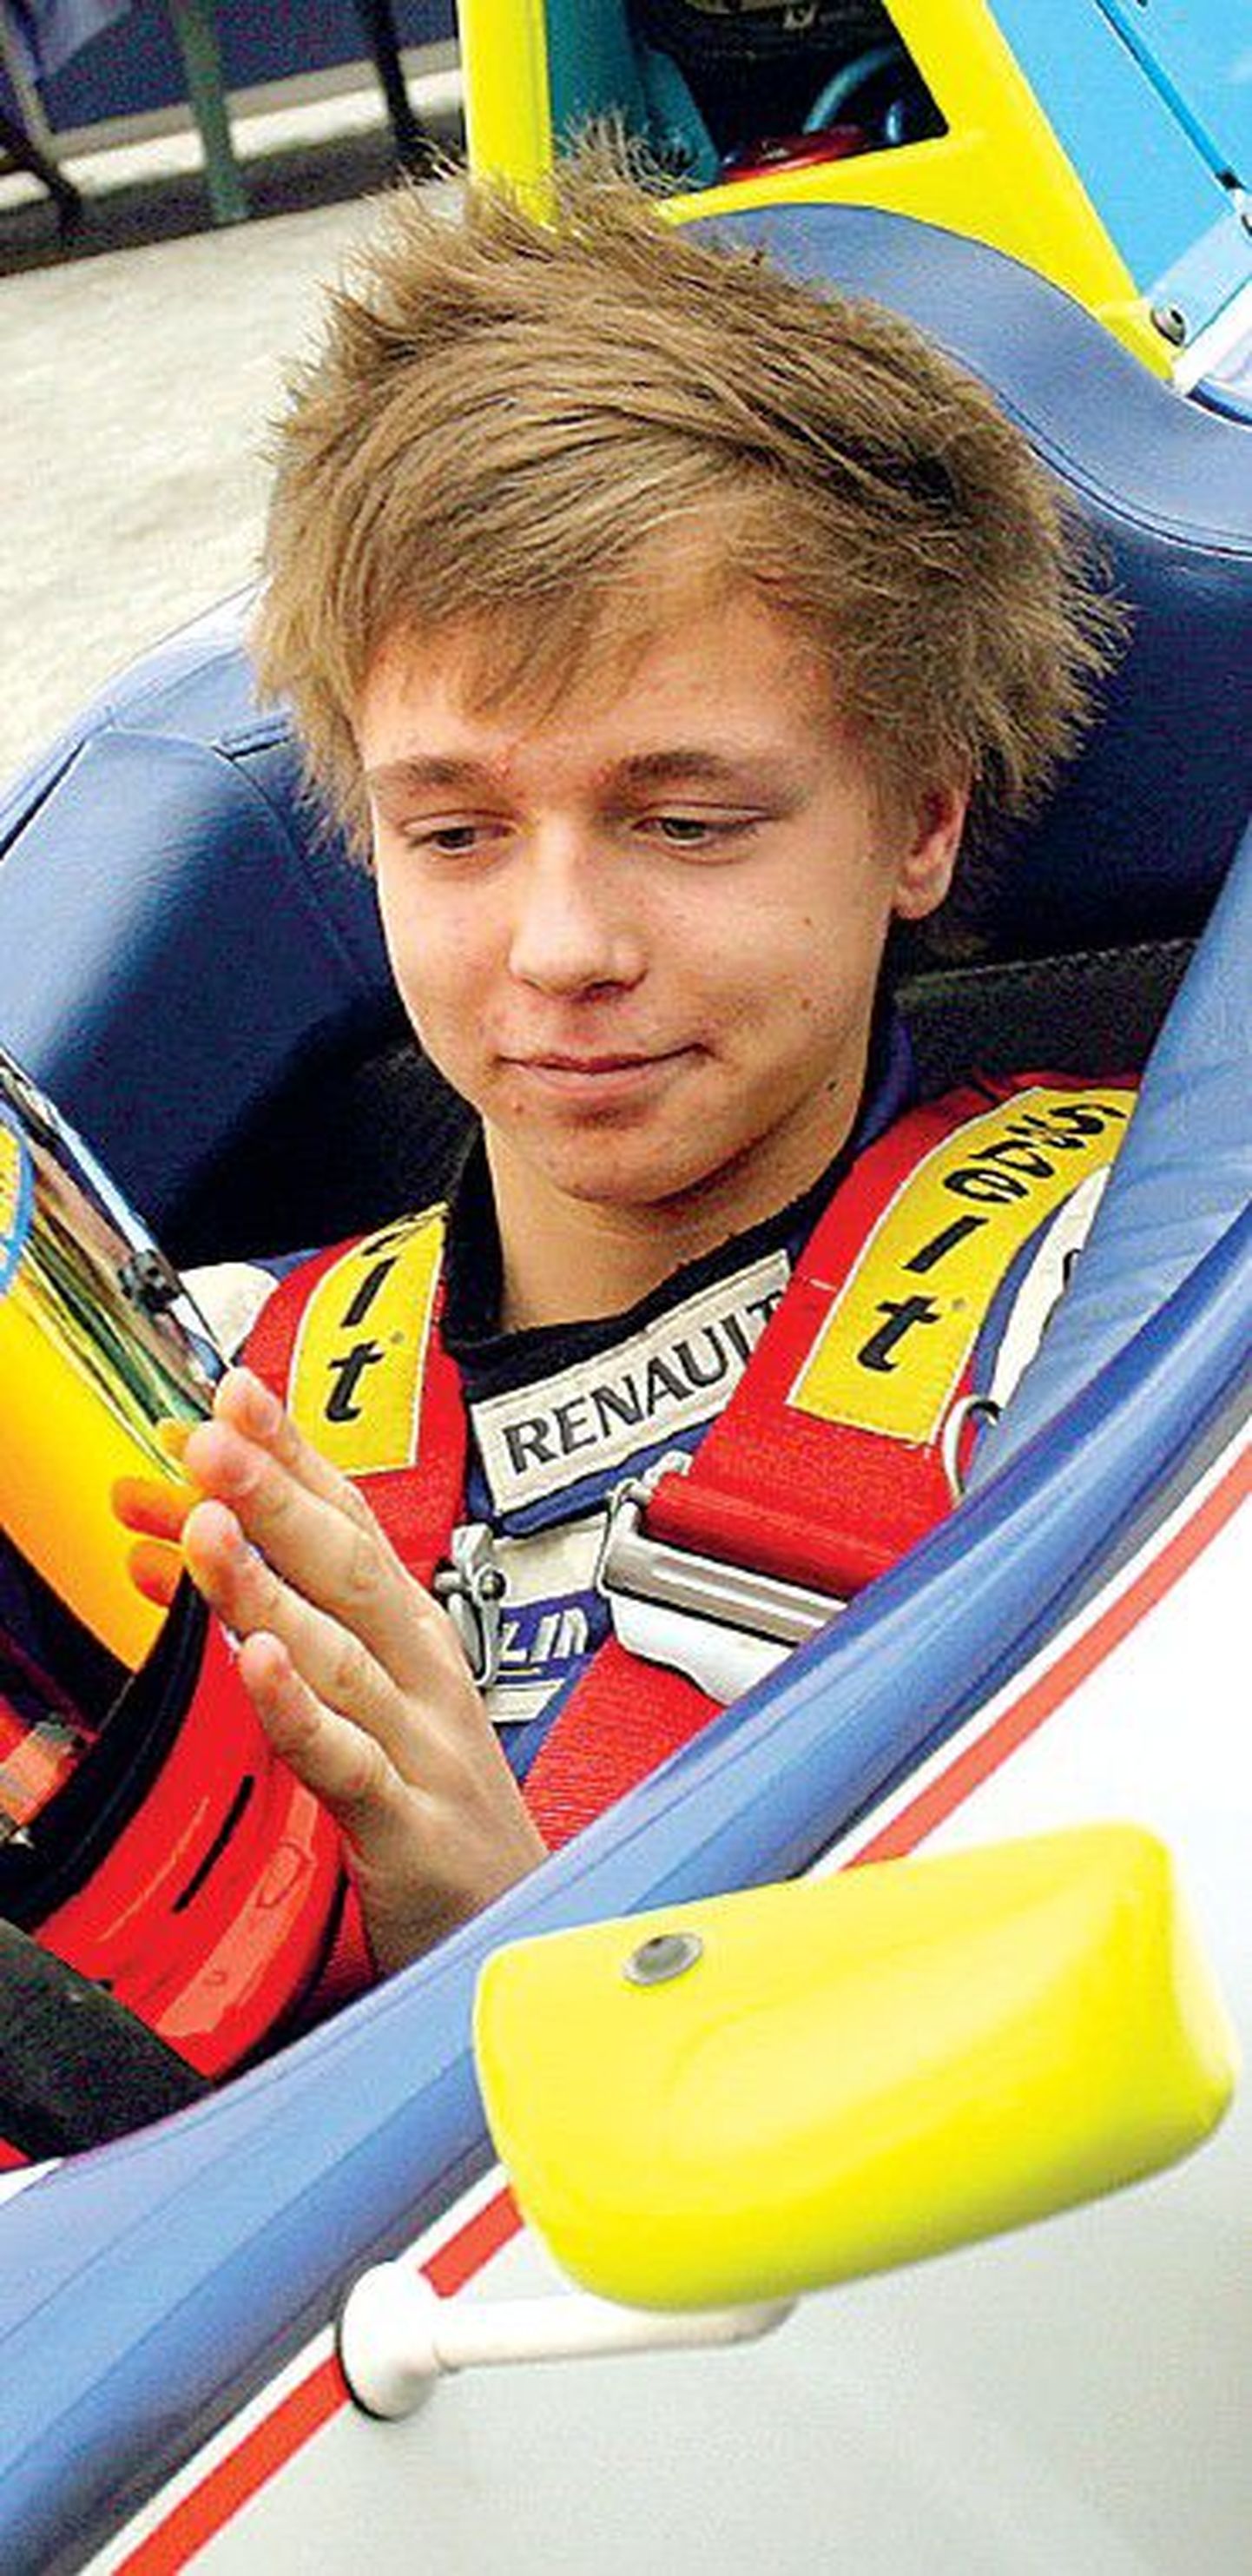 18-летний эстонский гонщик Кевин Корьюс вчера смог осуществить свою мечту.